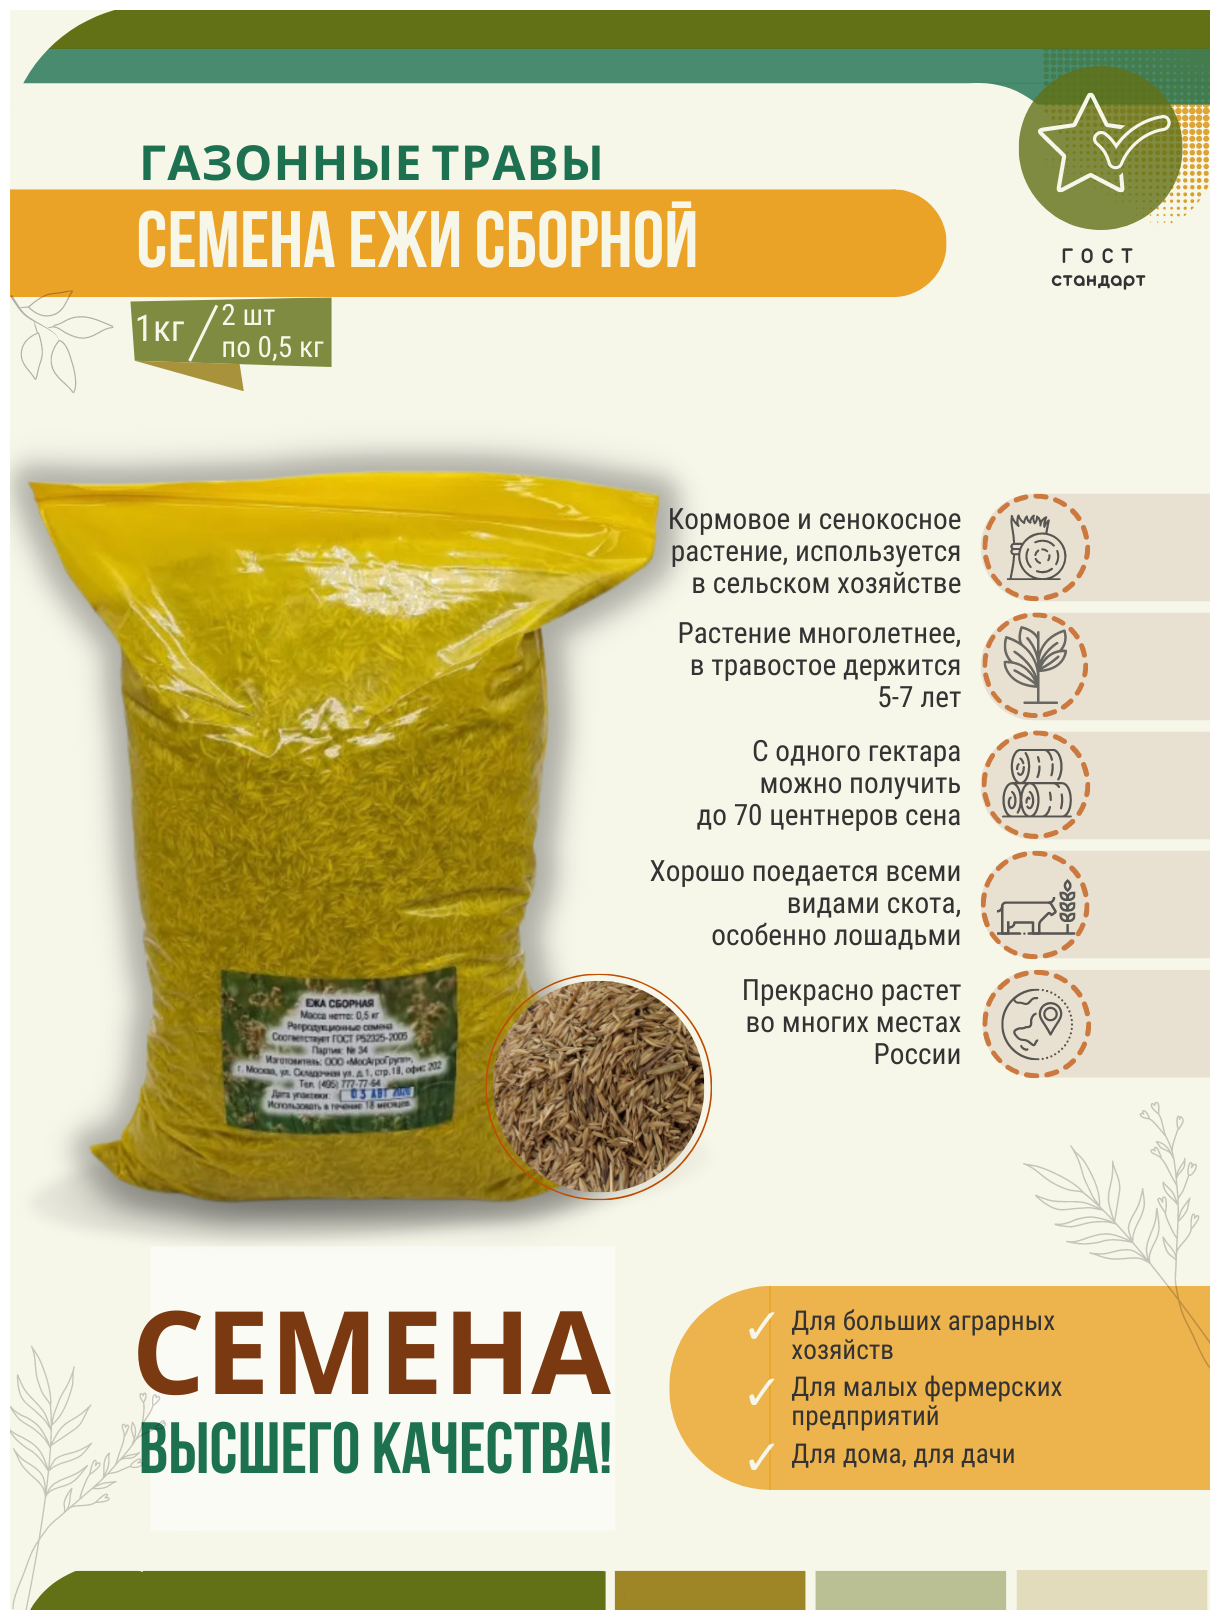 Семена Ежи Сборной 1 кг - 2 шт. по 05 кг Мосагрогрупп